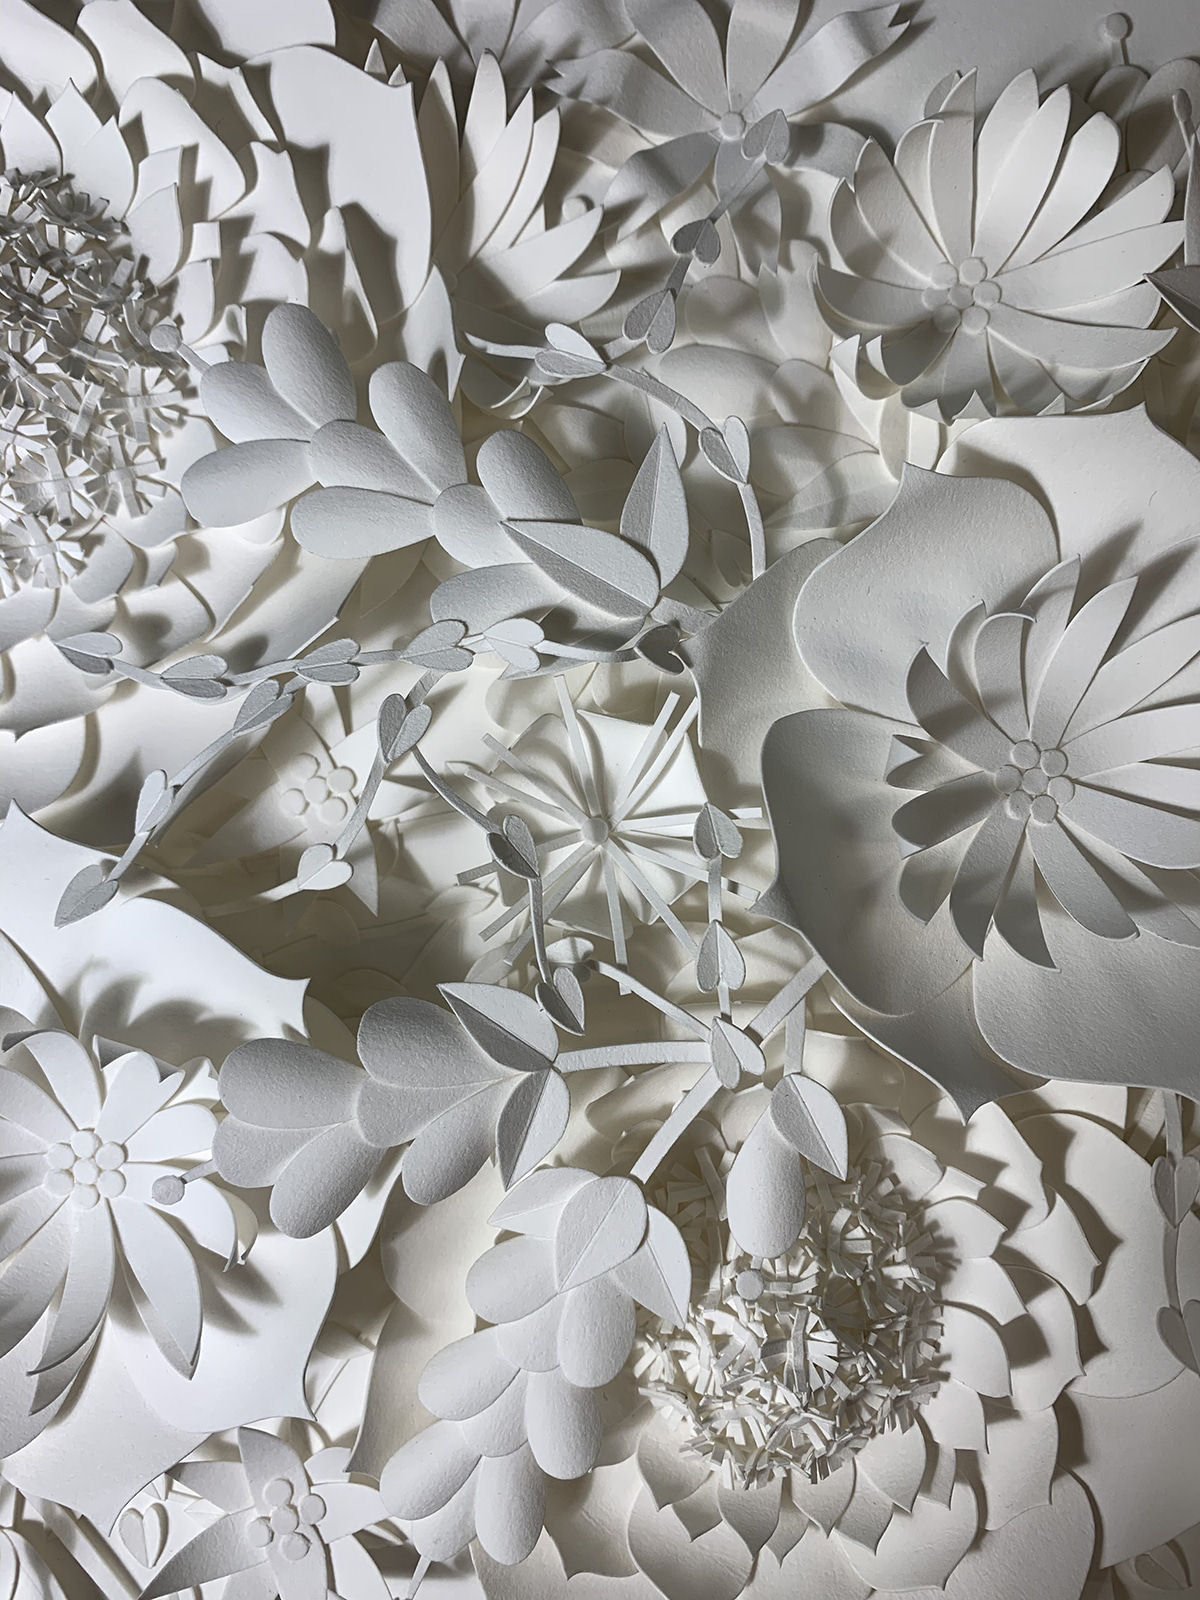 Artista cria 'jardins' exuberantes com flores de papel caprichosamente cortadas 05